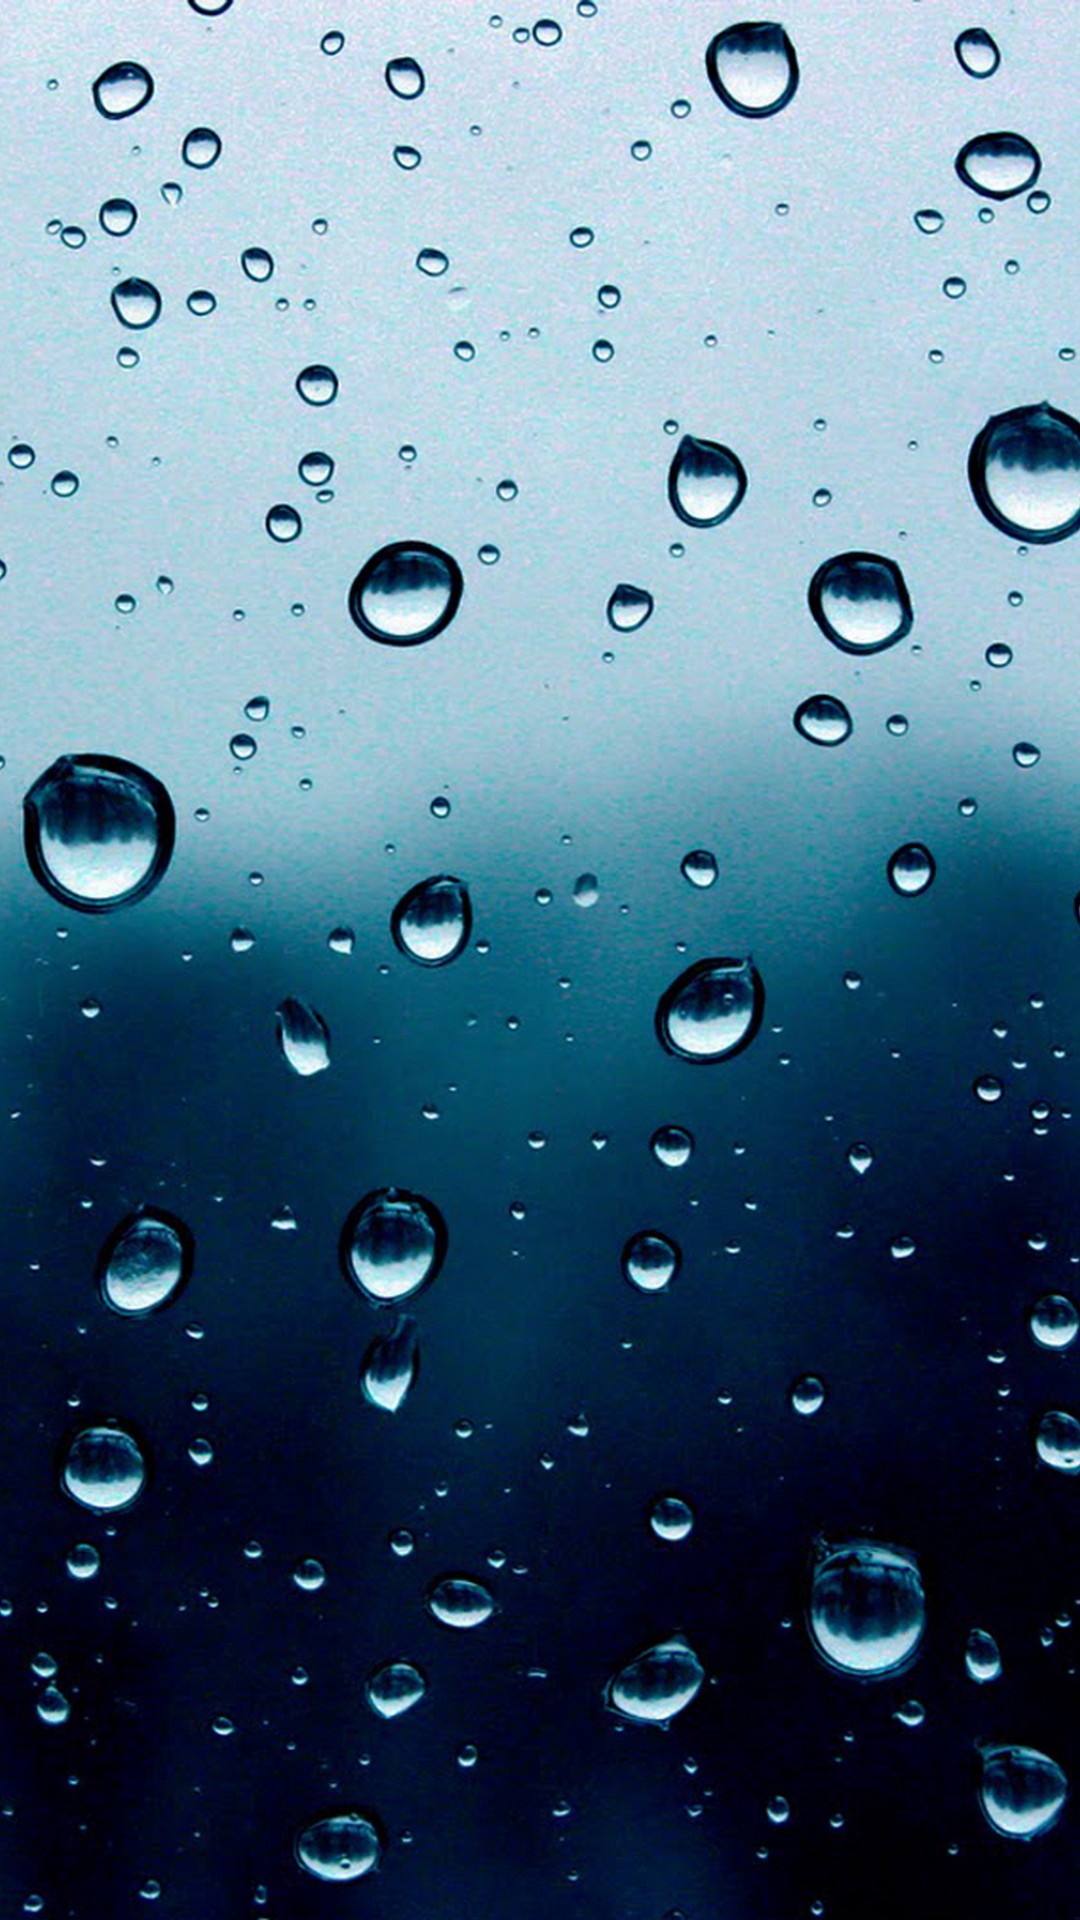 iPhone Wallpaper of Rain